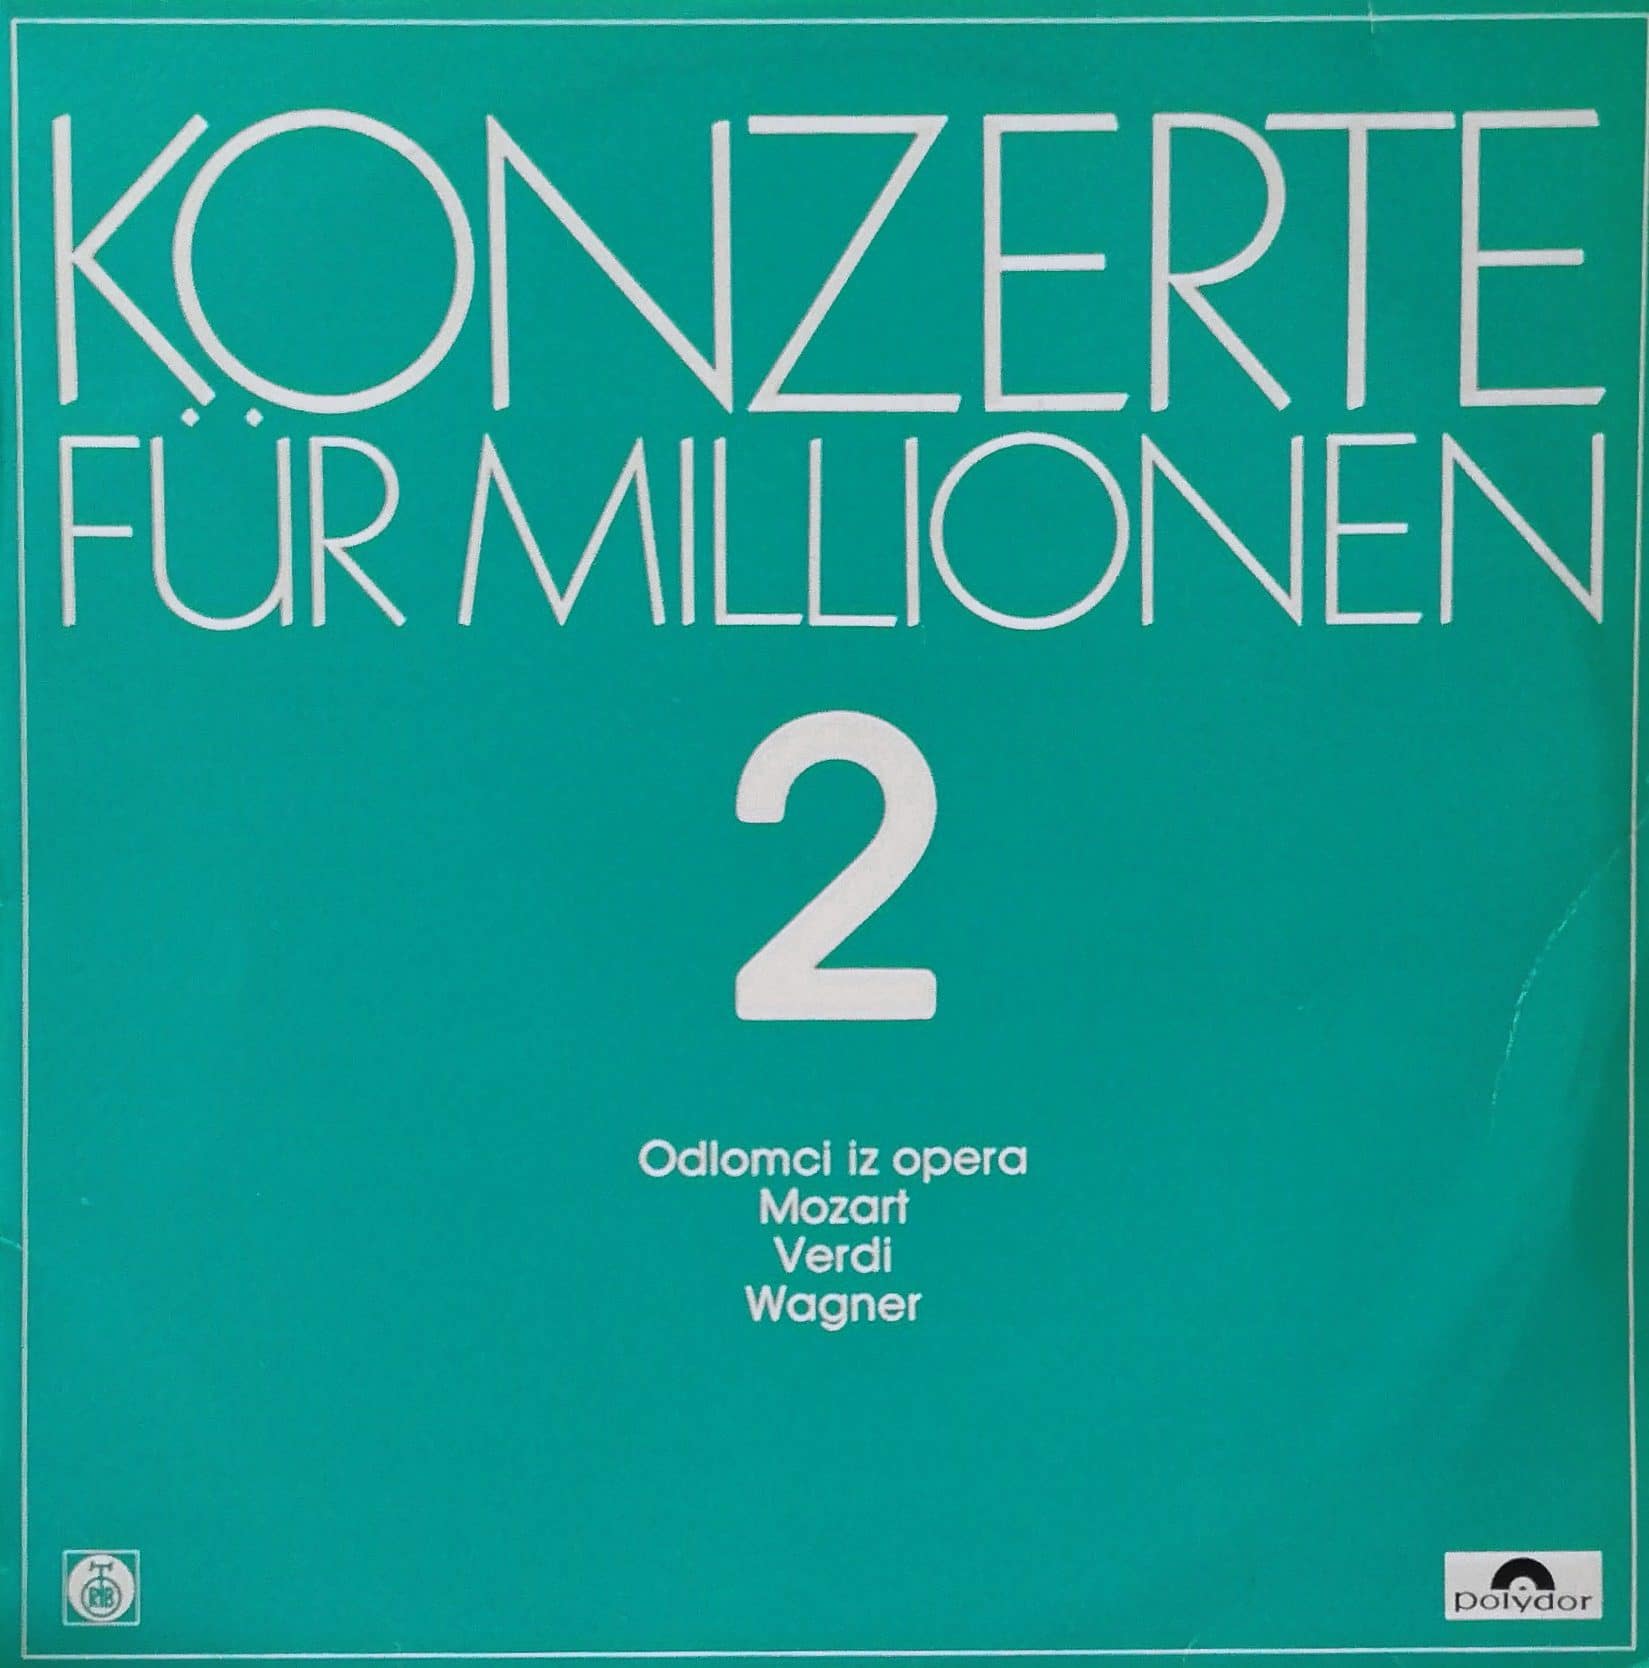 Gramofonska ploča Konzerte Für Millionen 2 - Odlomci iz opera Mozart, Verdi, Wagner Mozart / Verdi / Wagner 240060